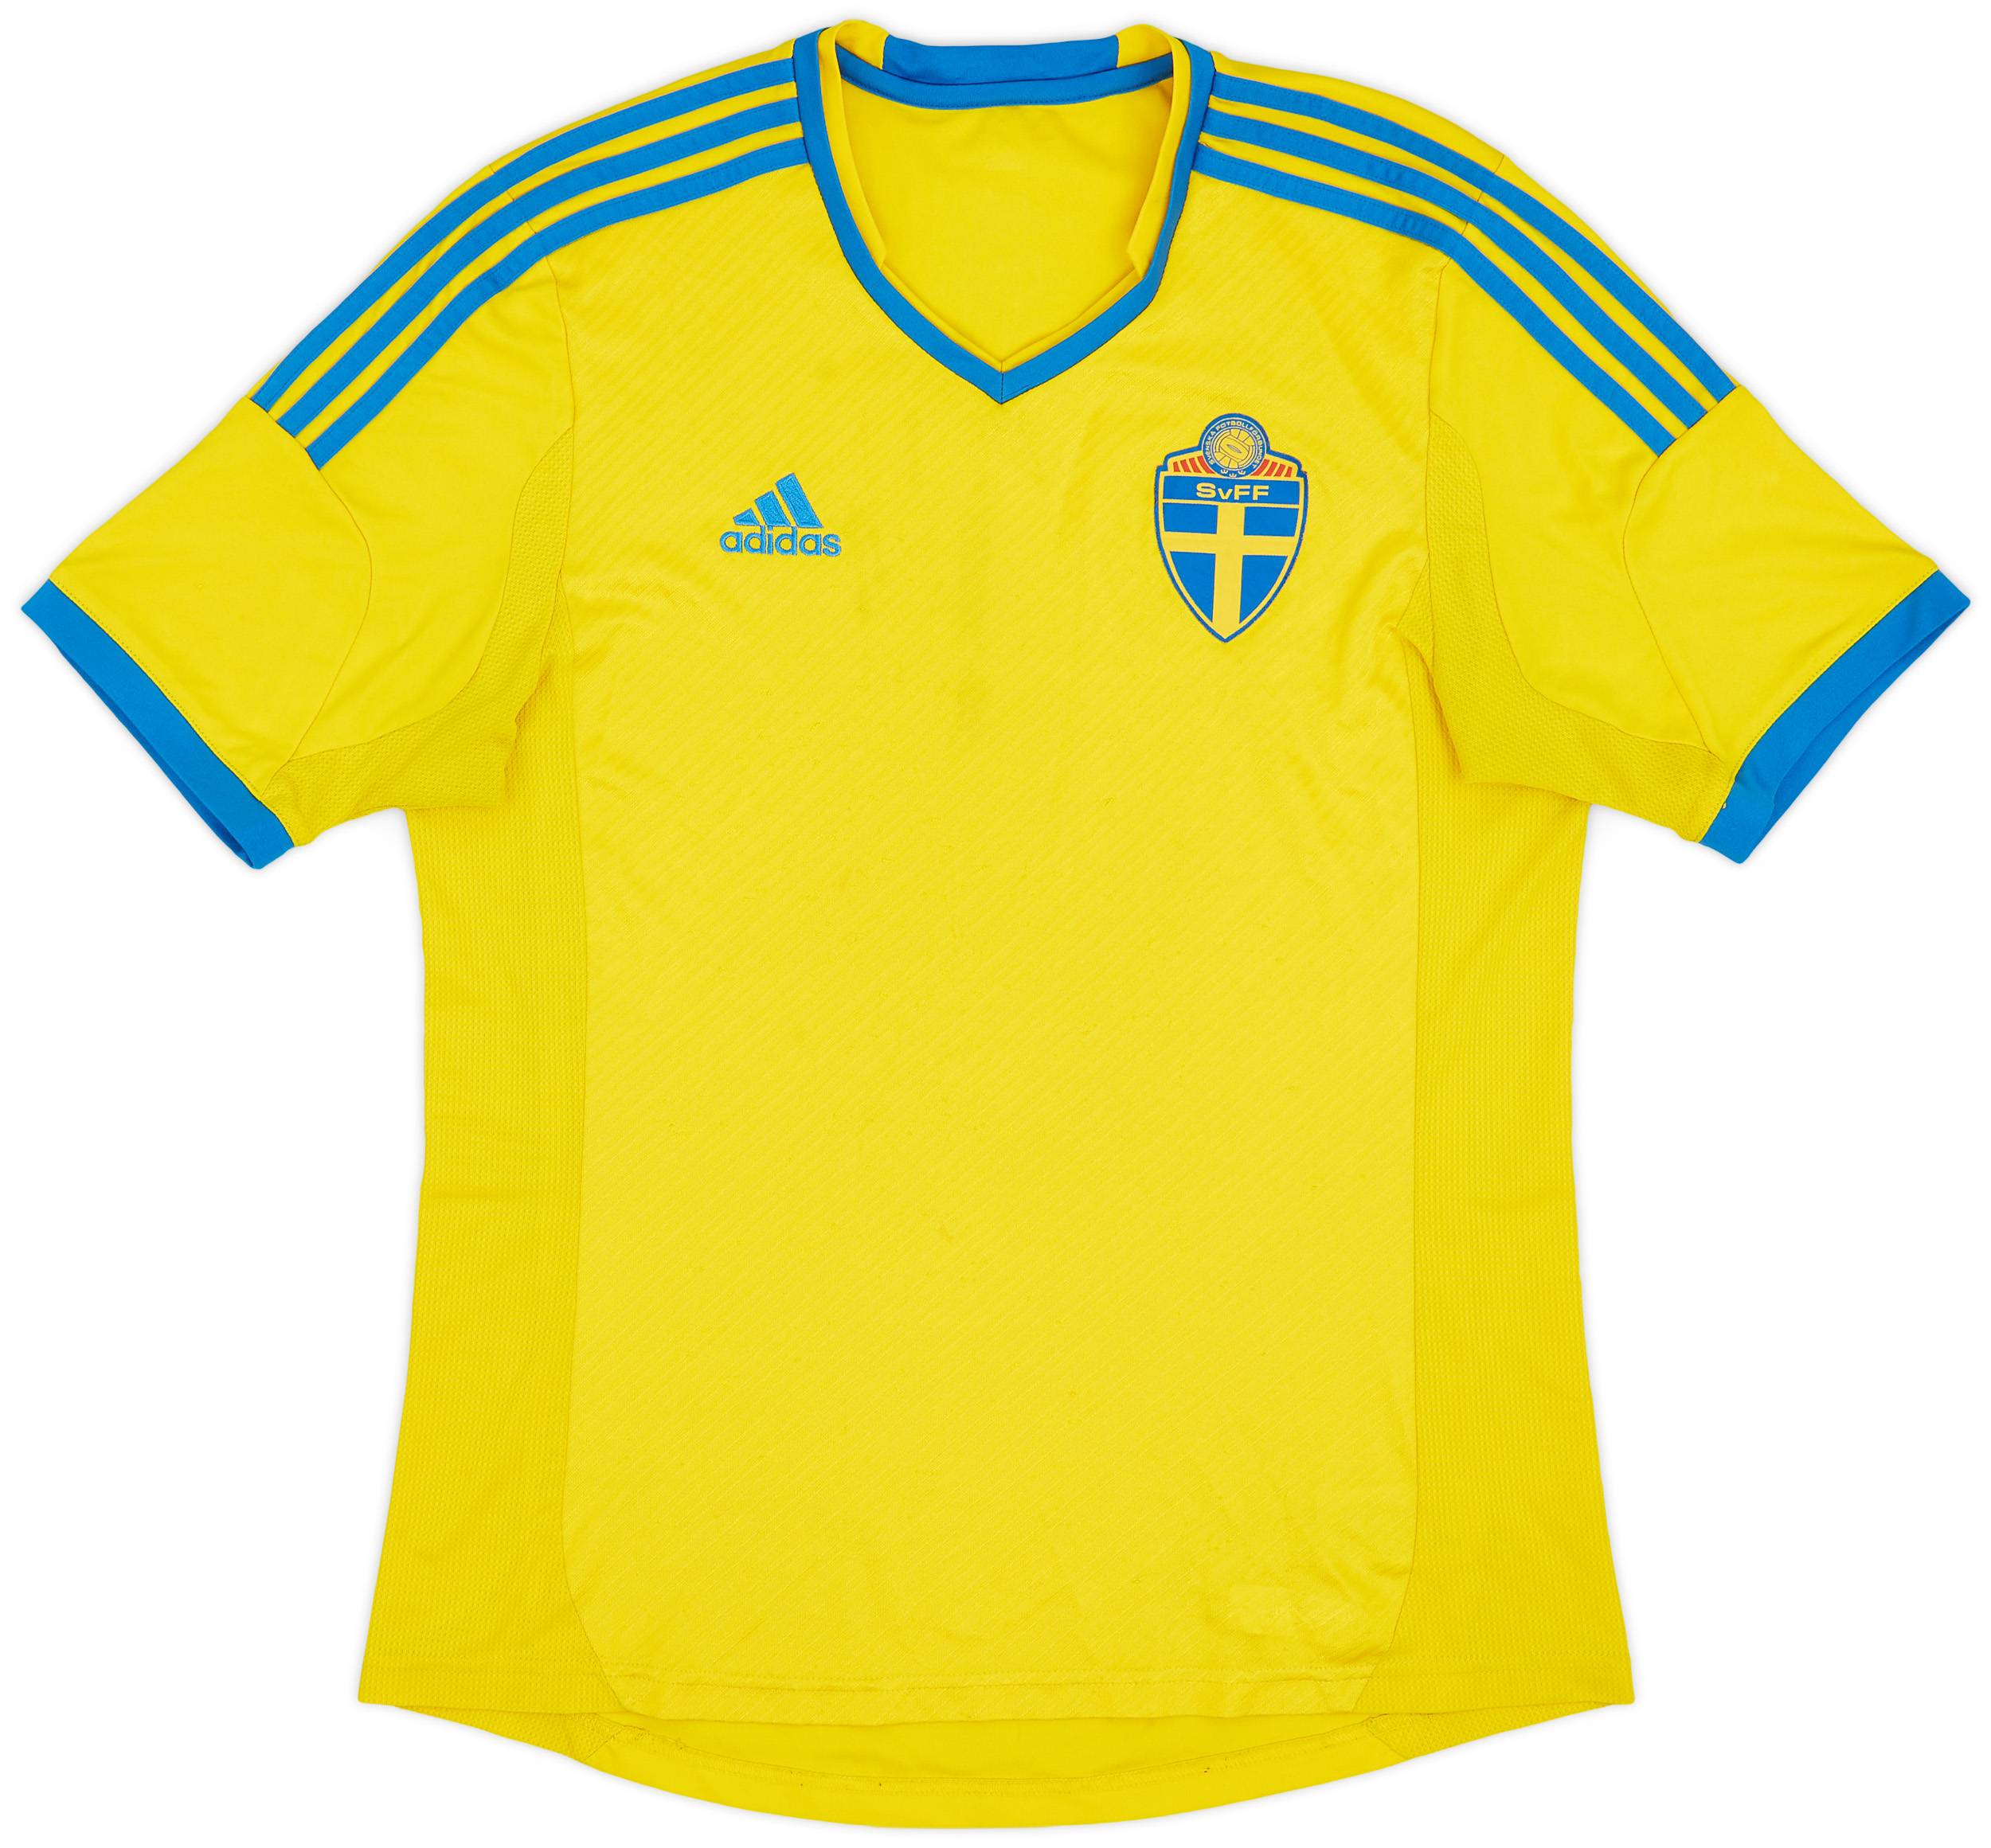 2013 Sweden Home Shirt - 5/10 - (S)